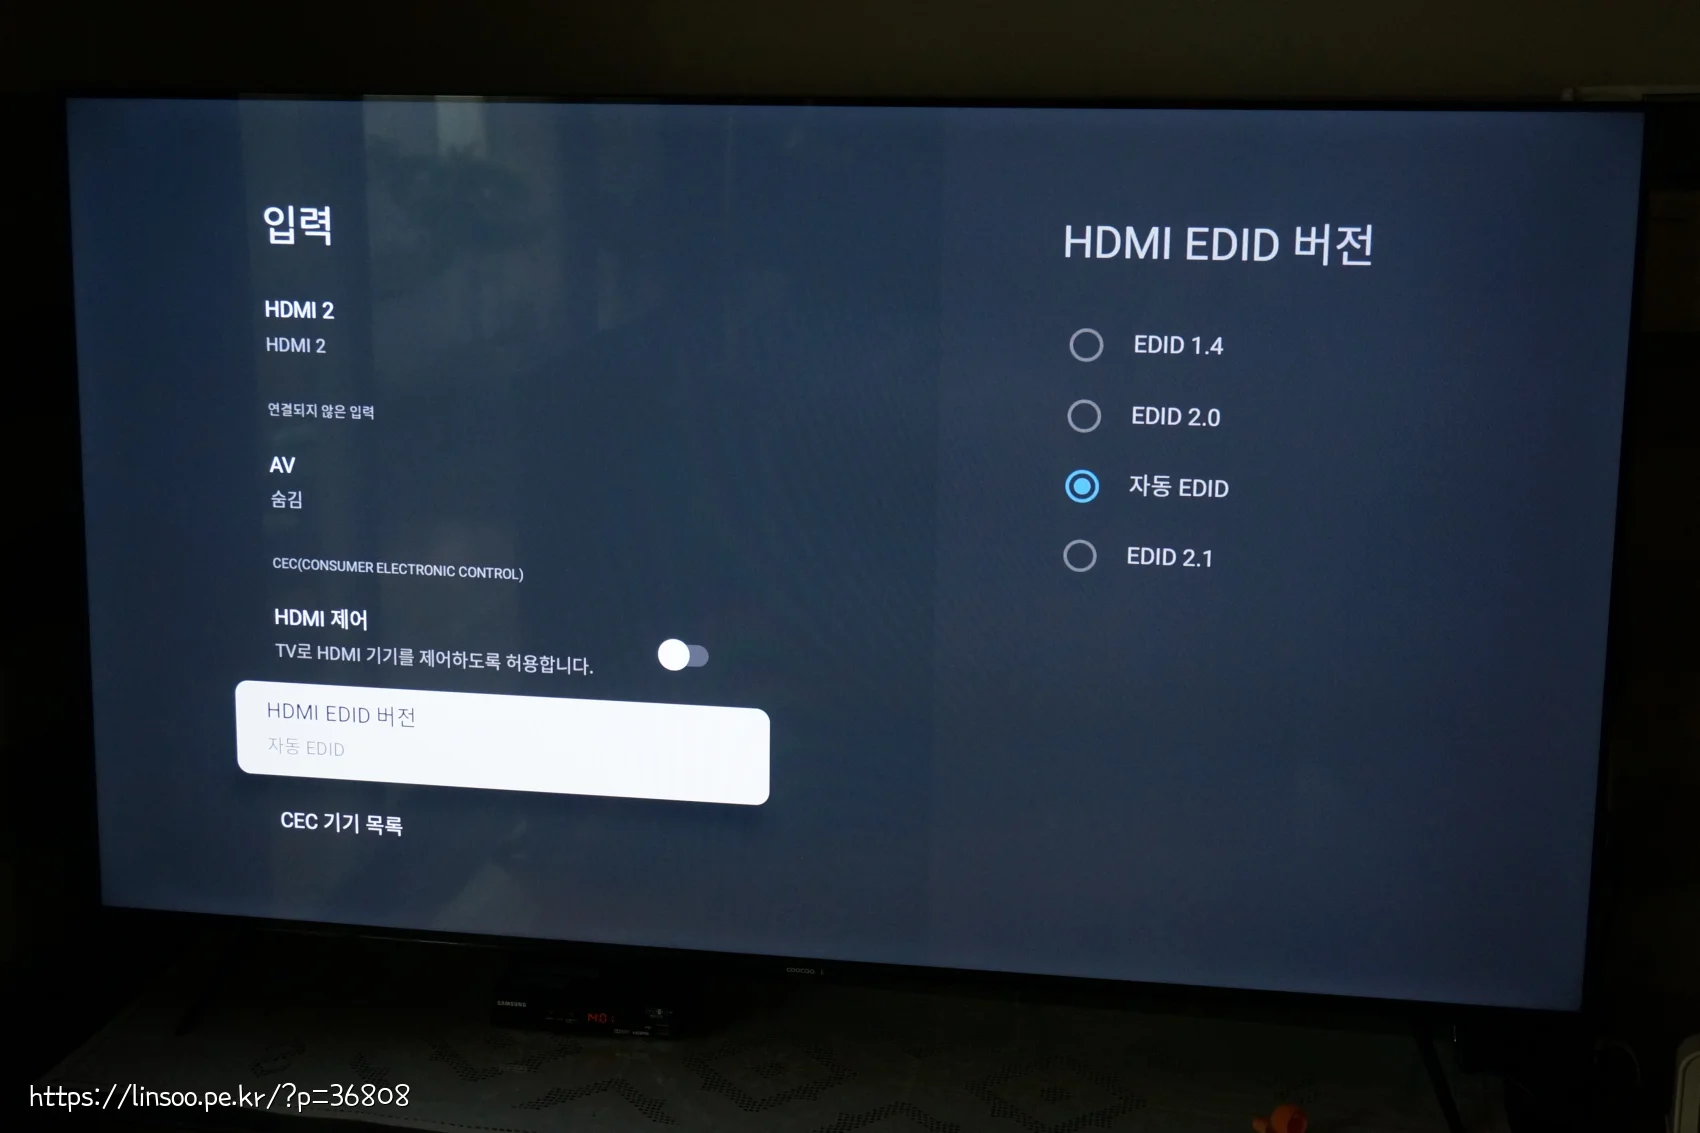 HDMI EDID 버전 설정 화면